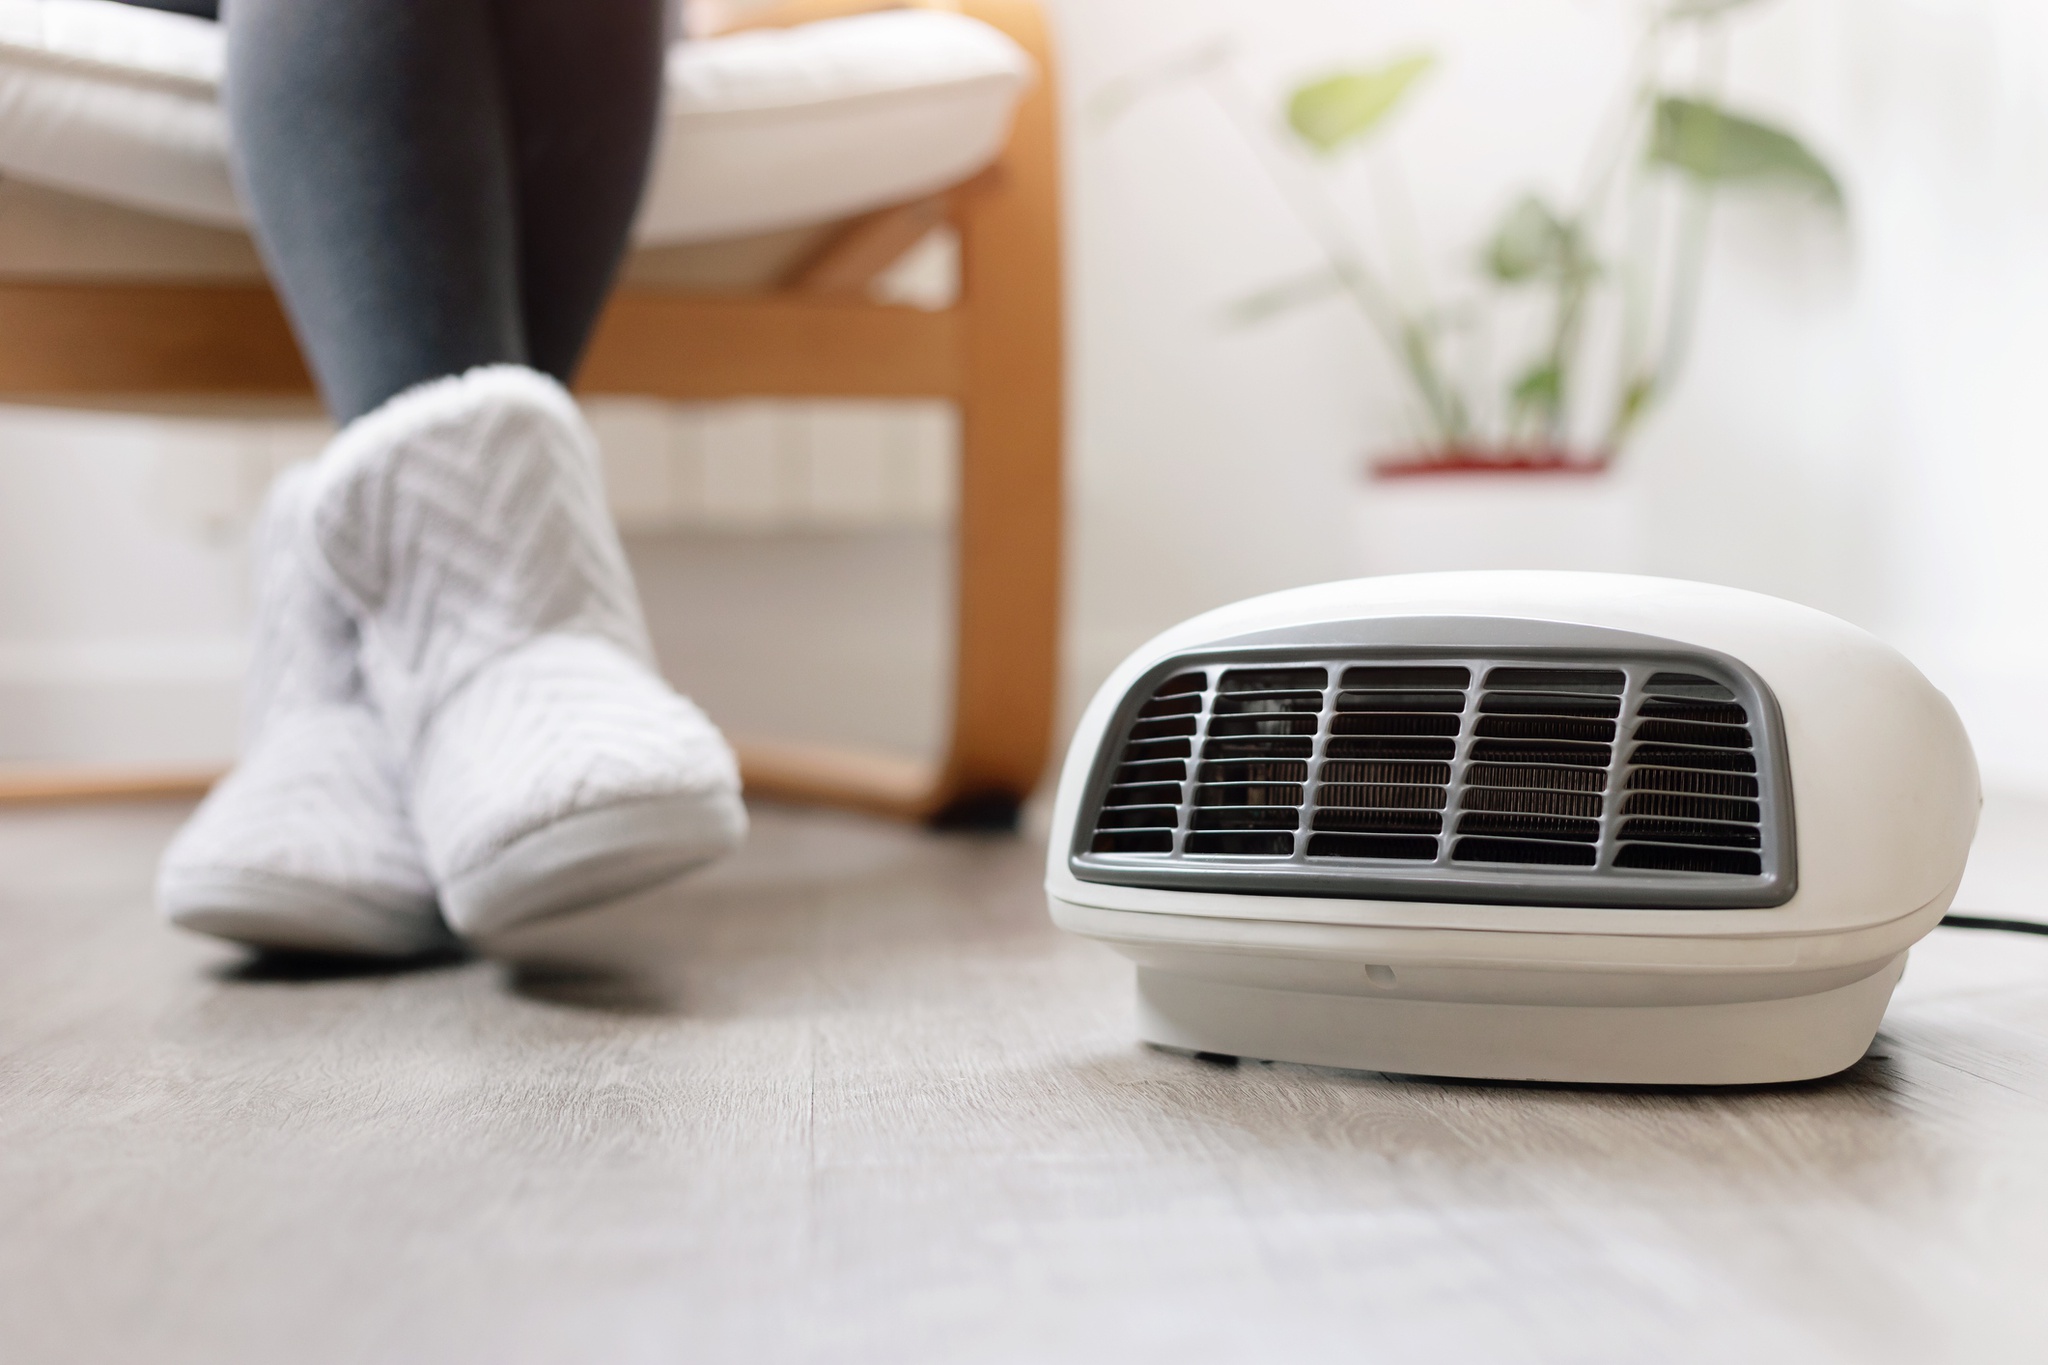 Tragbare Heizgeräte sind Energiefresser.  Wie hält man das Haus ohne es warm?  |  Energie